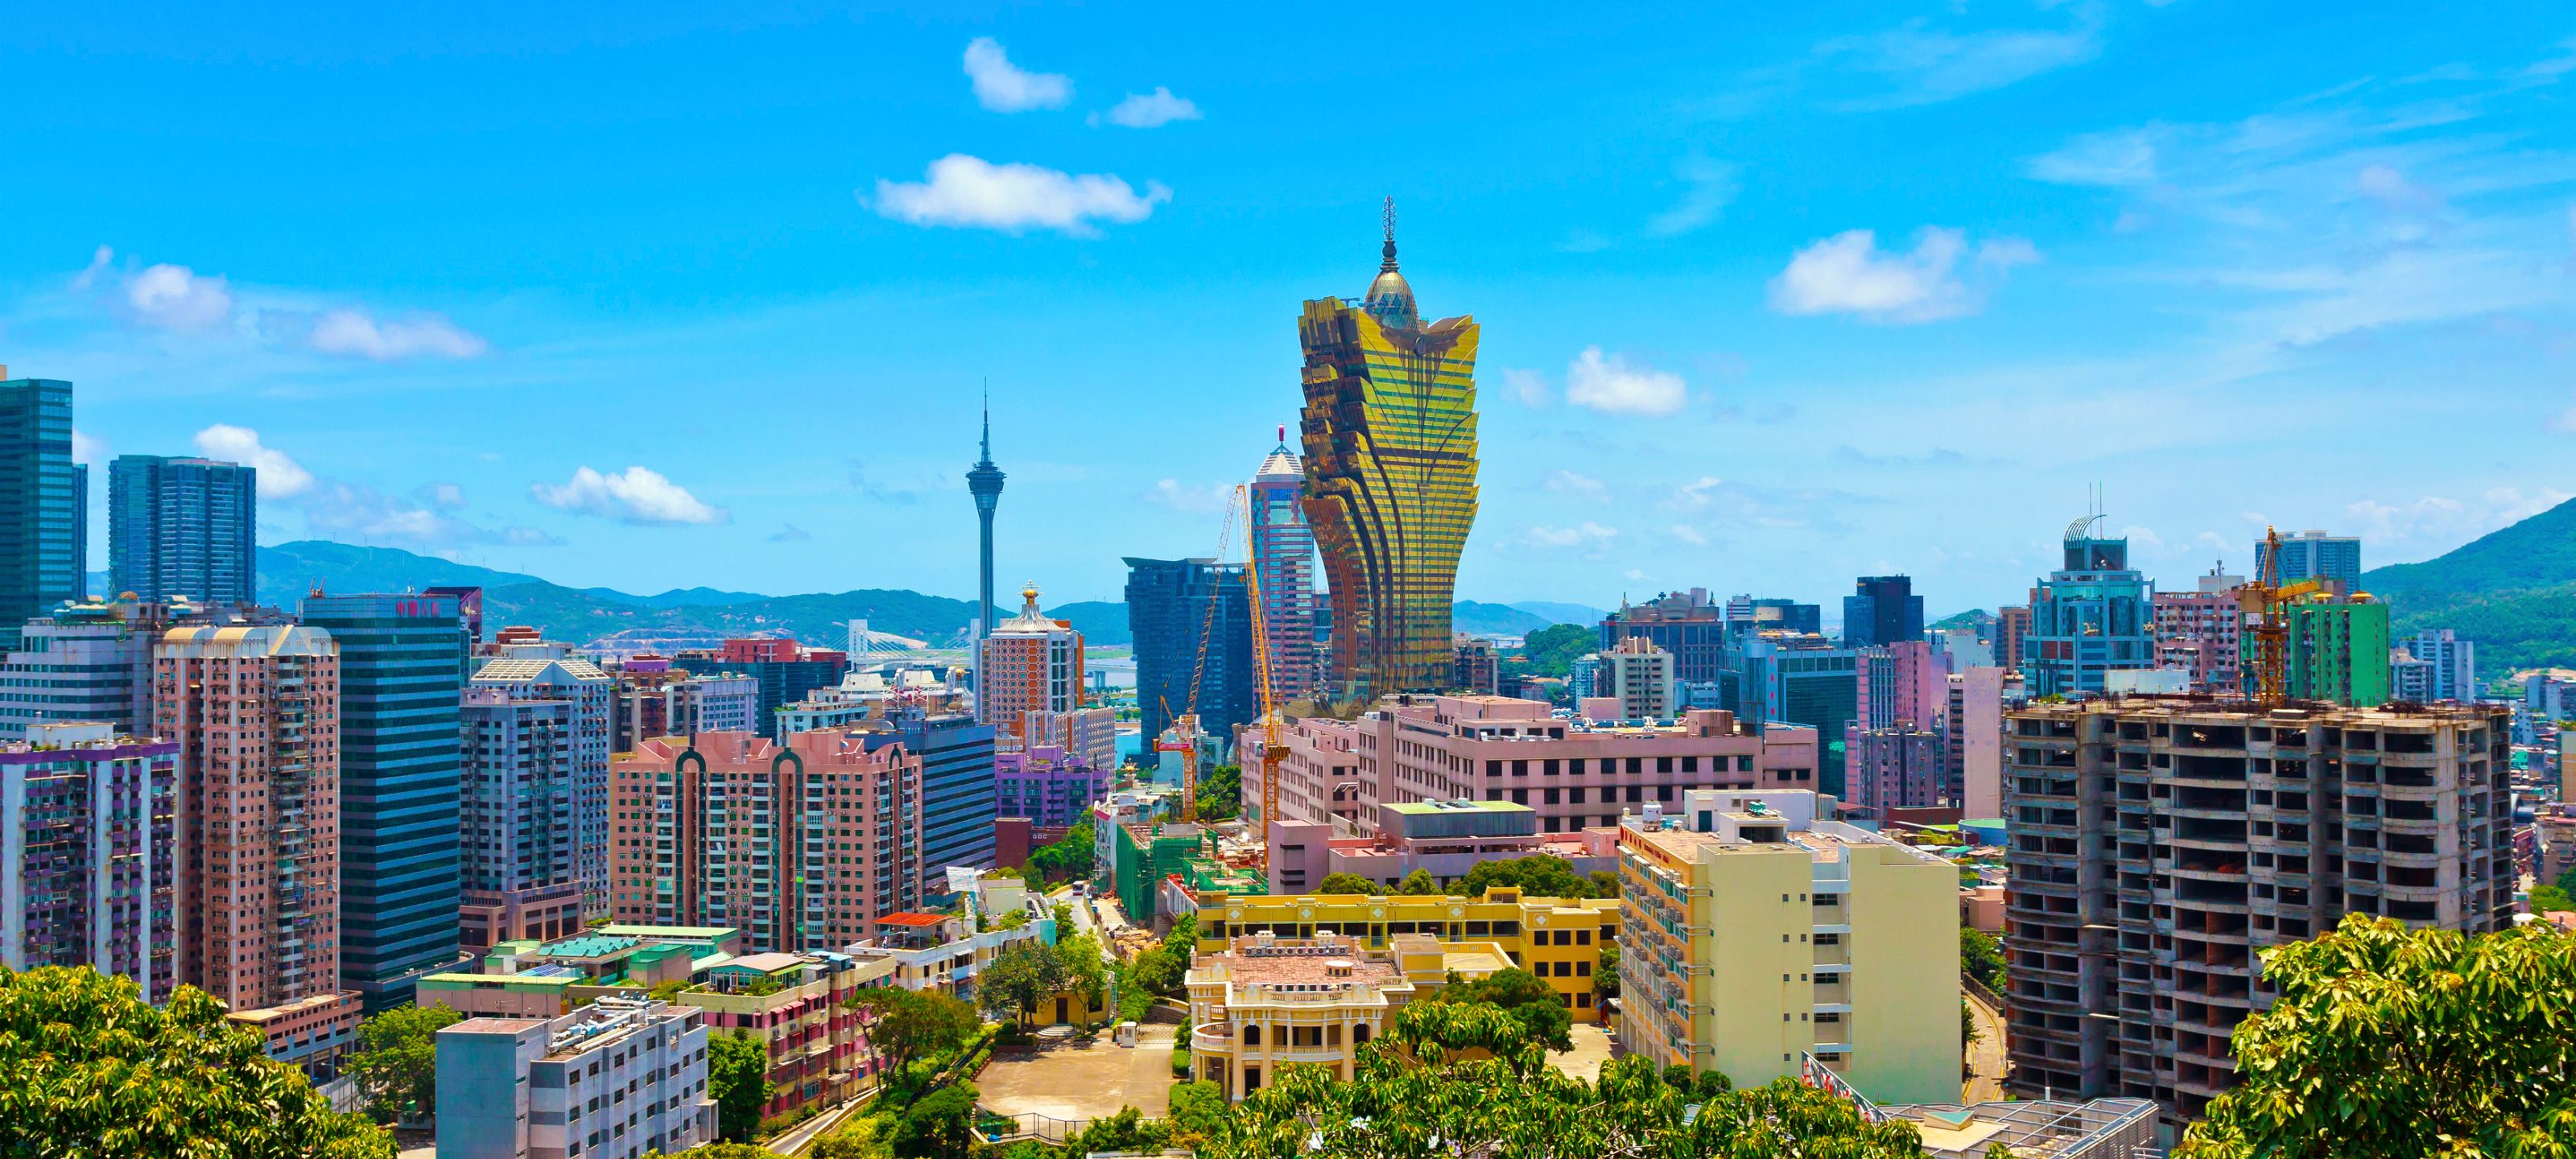 Casinos online estrangeiros em Macau, também conhecidos como Leste Vegas